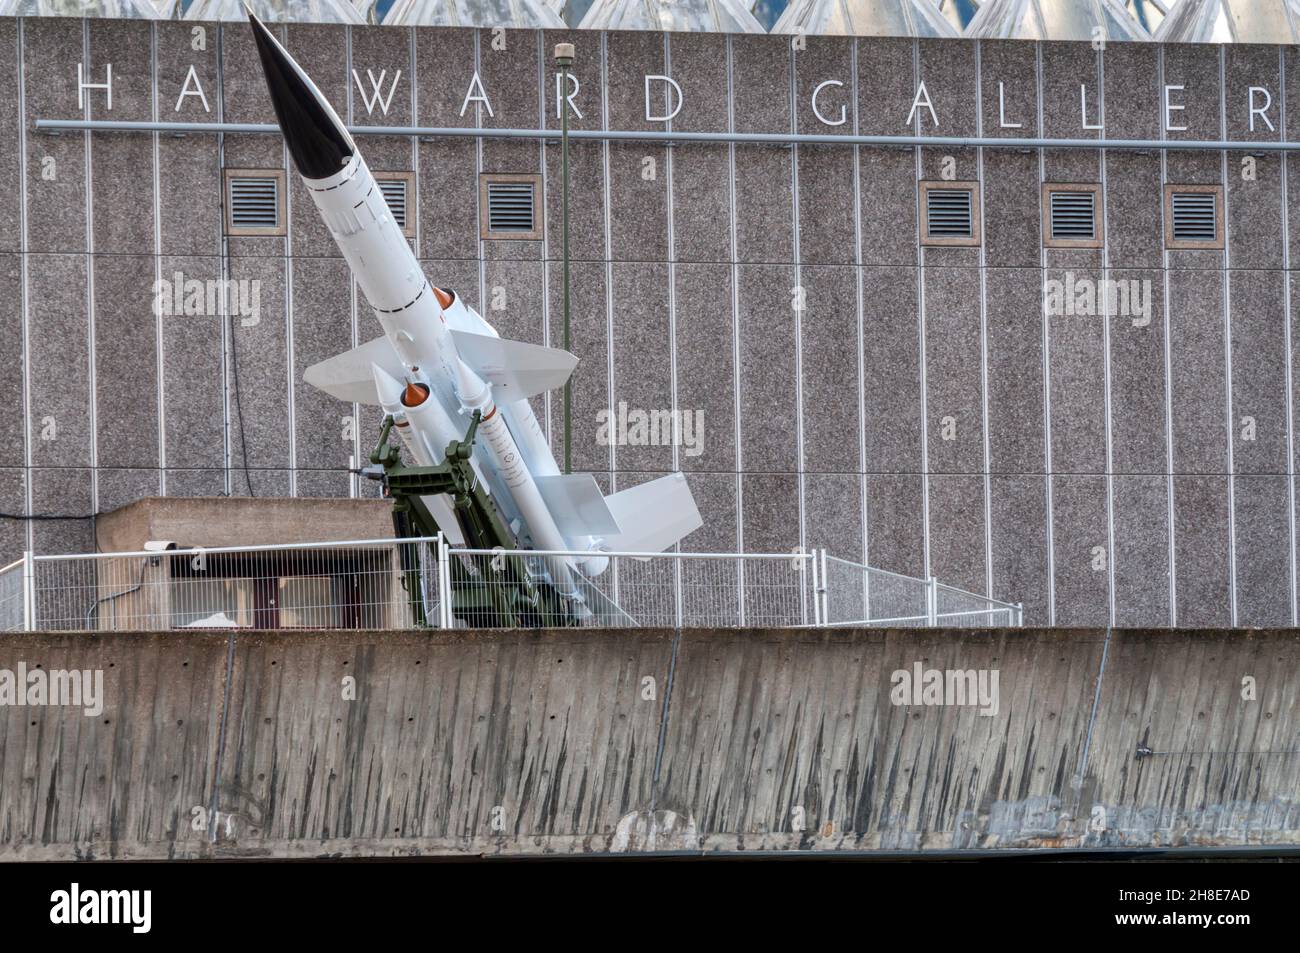 Missile à la galerie Hayward dans le cadre de l'histoire est maintenant exposé à la veille de l'élection générale de 2015.Exposition organisée par Richard Wentworth. Banque D'Images